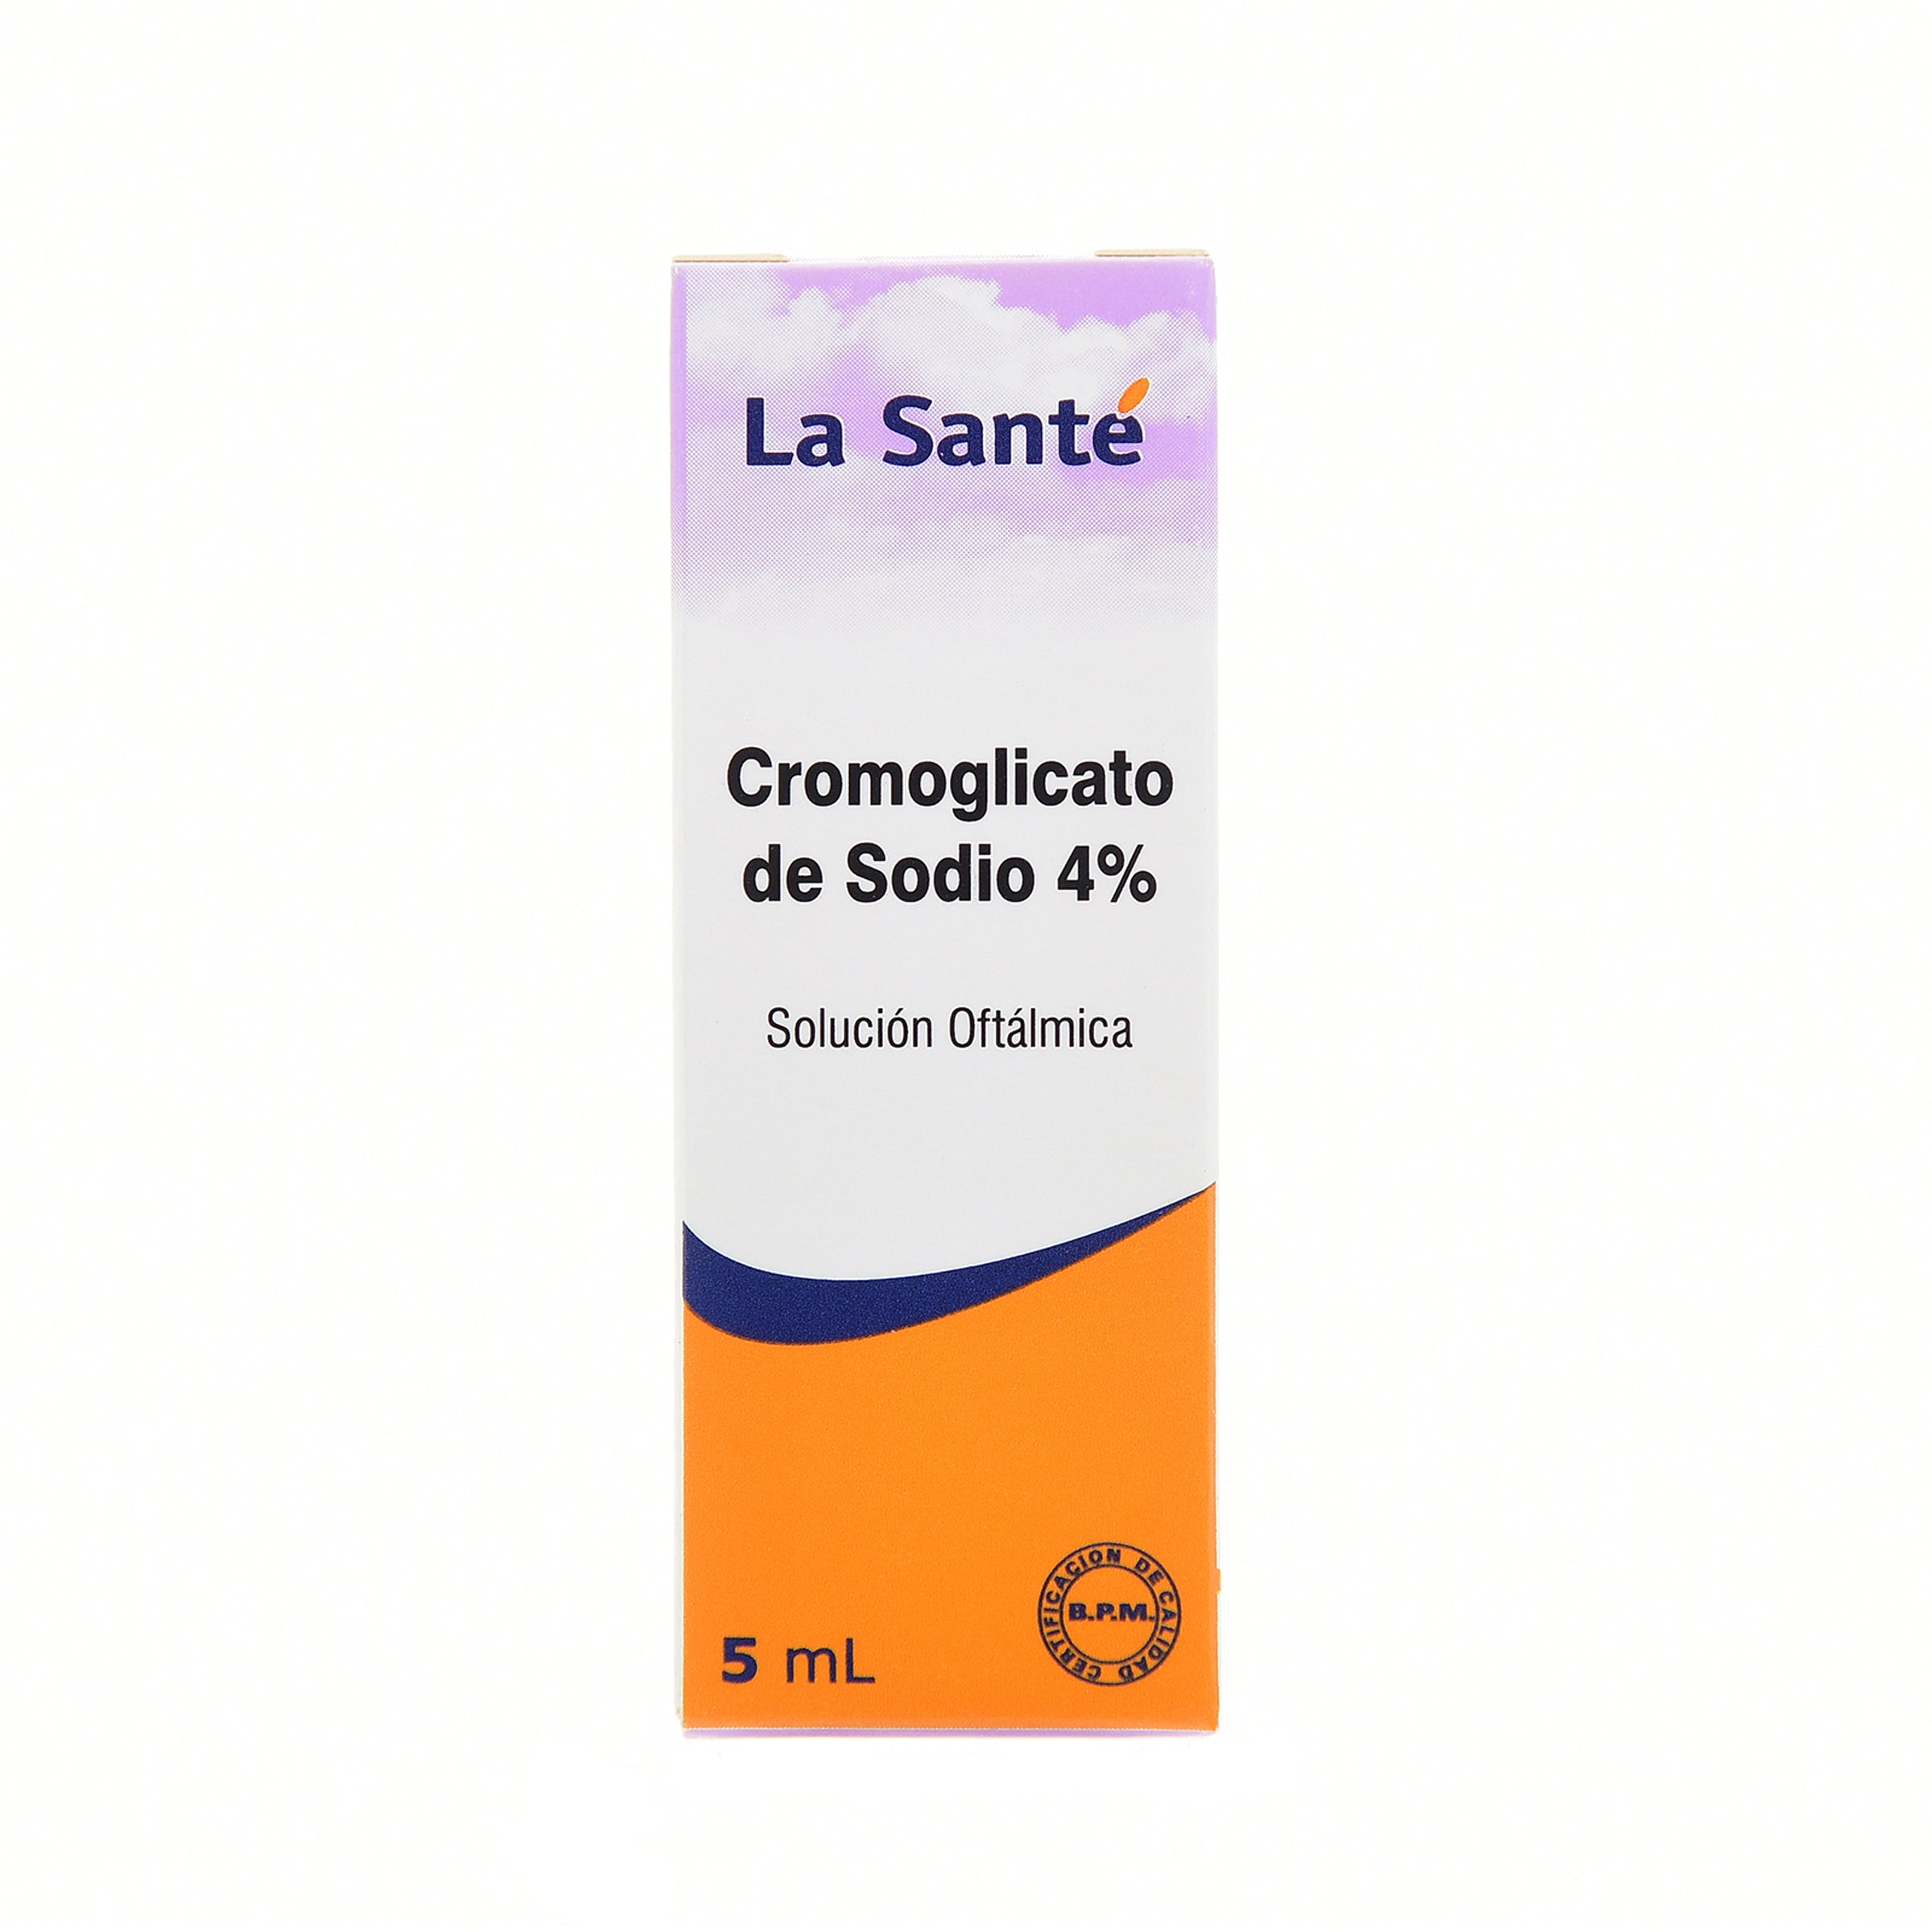 CROMOGLICATO DE SODIO 4% OFTALMICO 5 ML LS